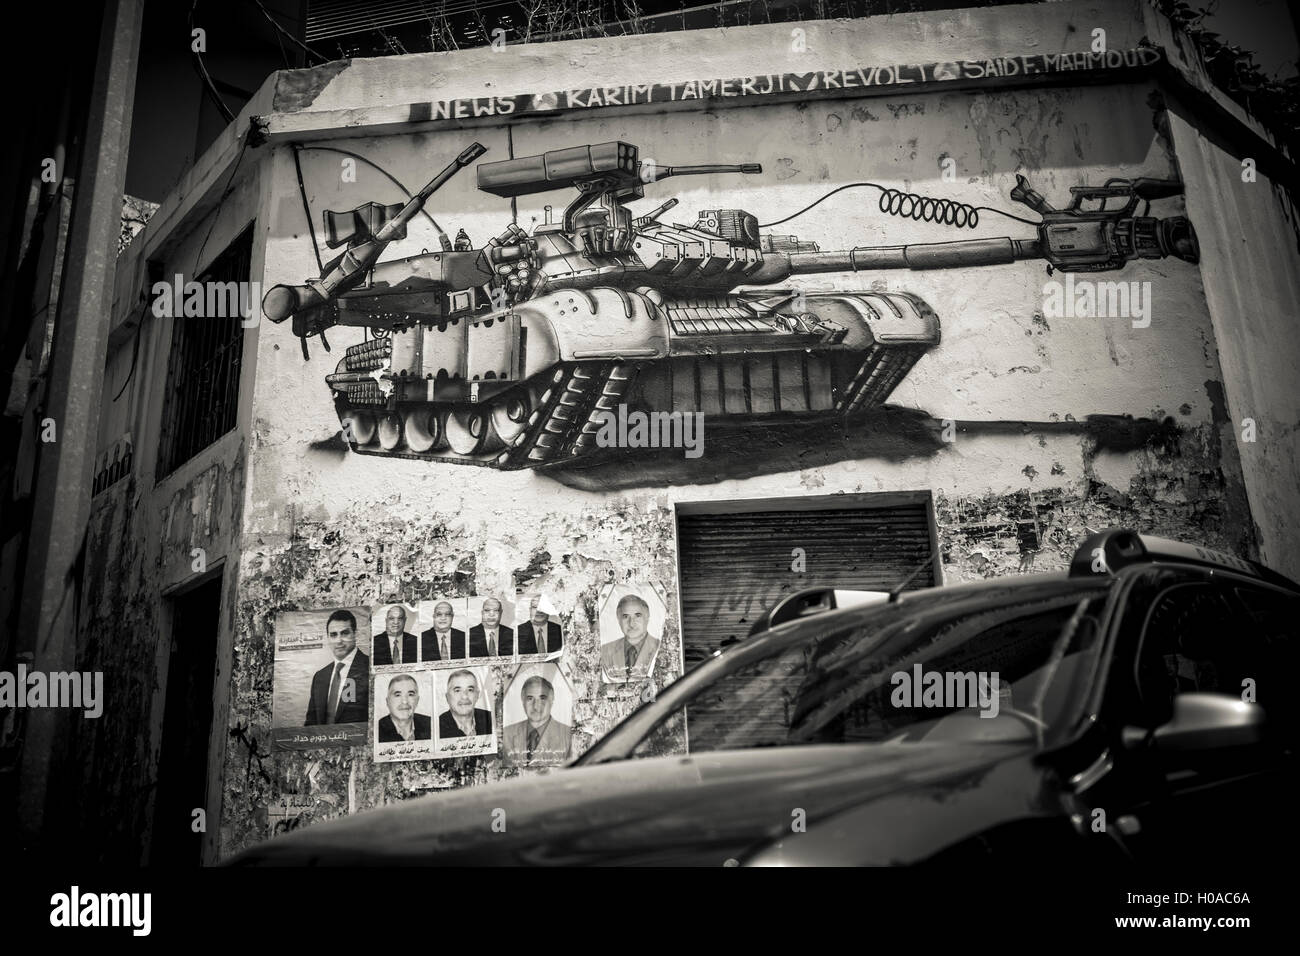 Les graffitis à Beyrouth - 10/06/2016 - Liban / Beyrouth - Beyrouth, Beyrouth, juin 2016. Bilal Tarabey - art de la rue / Le Pictorium Banque D'Images